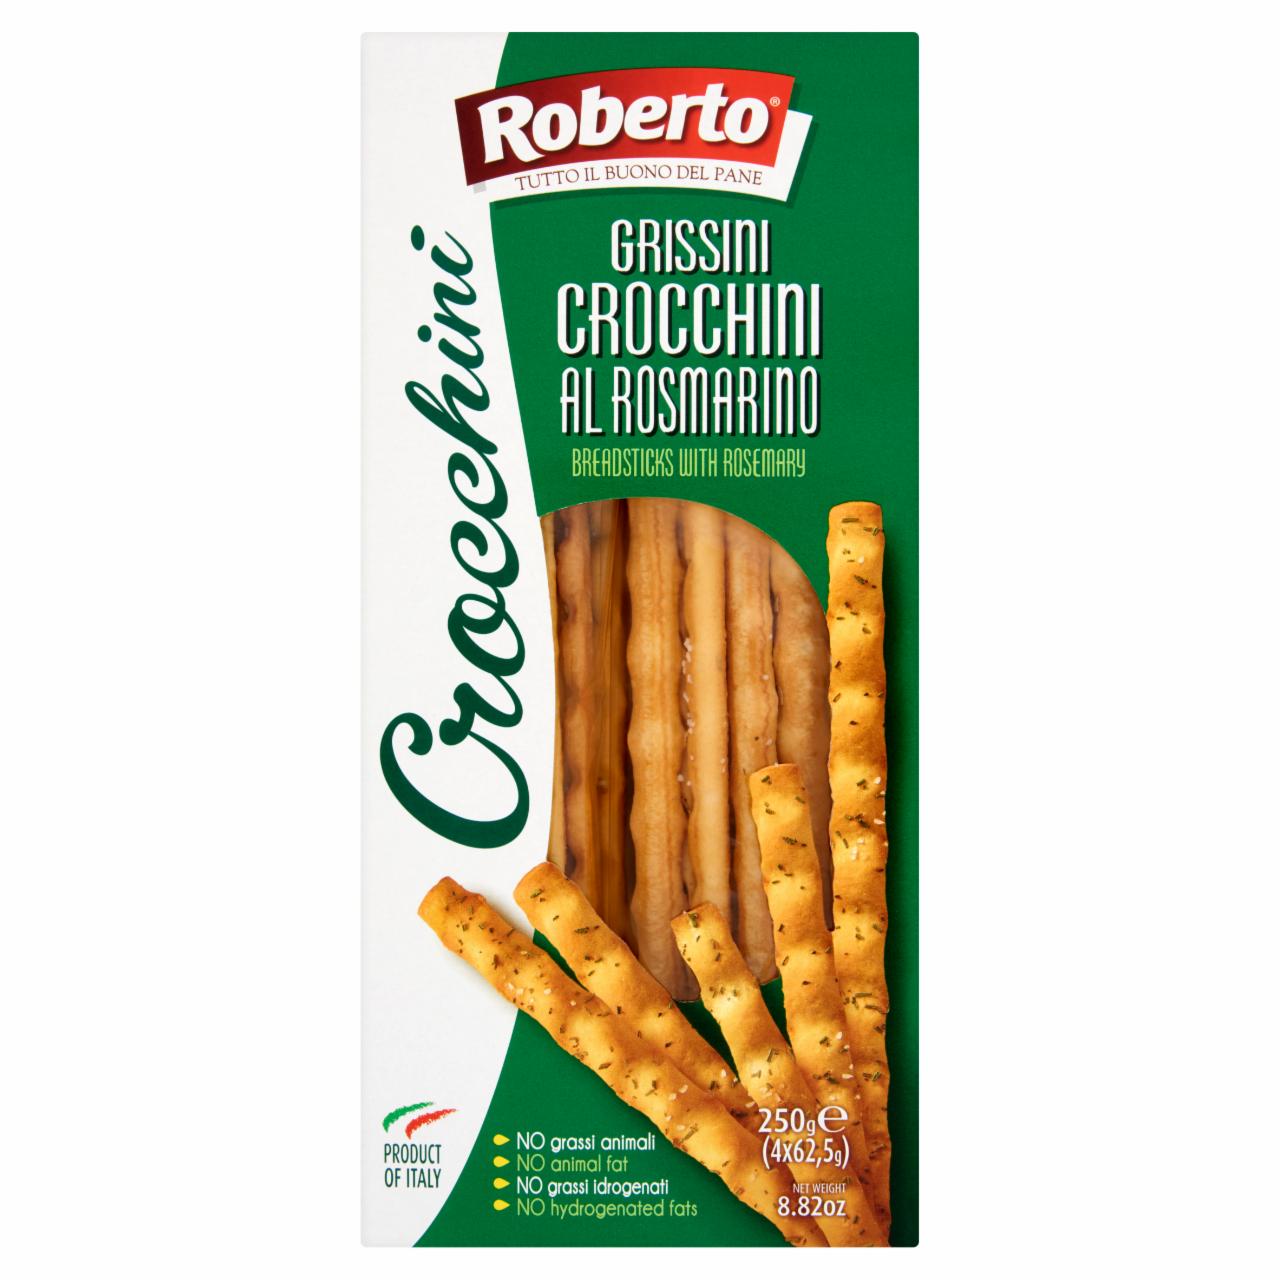 Képek - Crocchini kenyérrudak pálmaolajjal és rozmaringgal Roberto